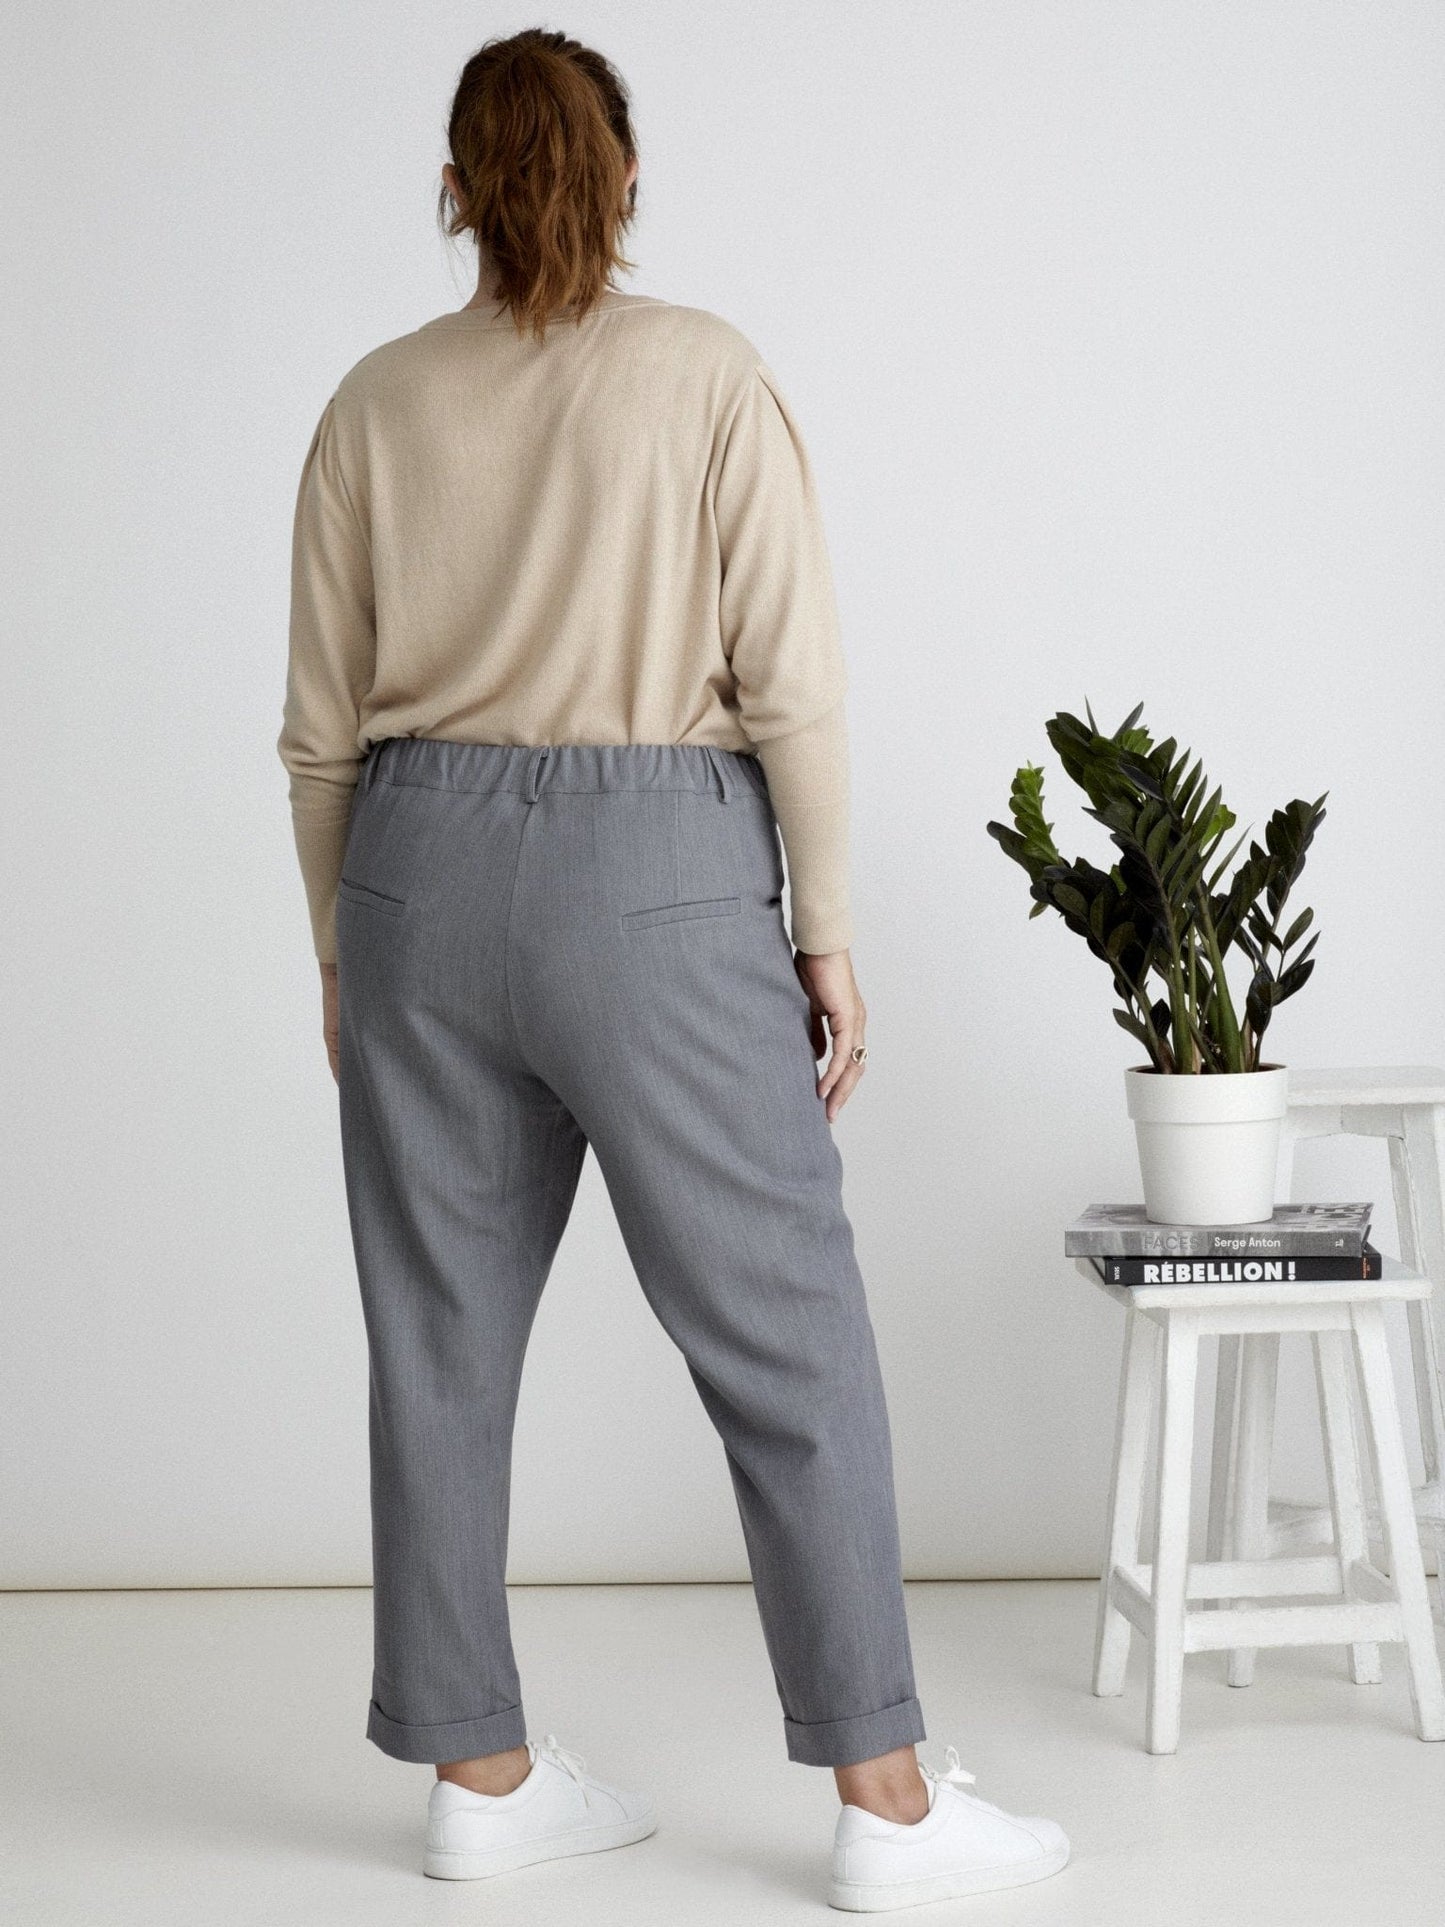 Les Militantes - Maurice pantalon gris 7/8 grande taille  chic, tendance hanches larges de qualité made in France 